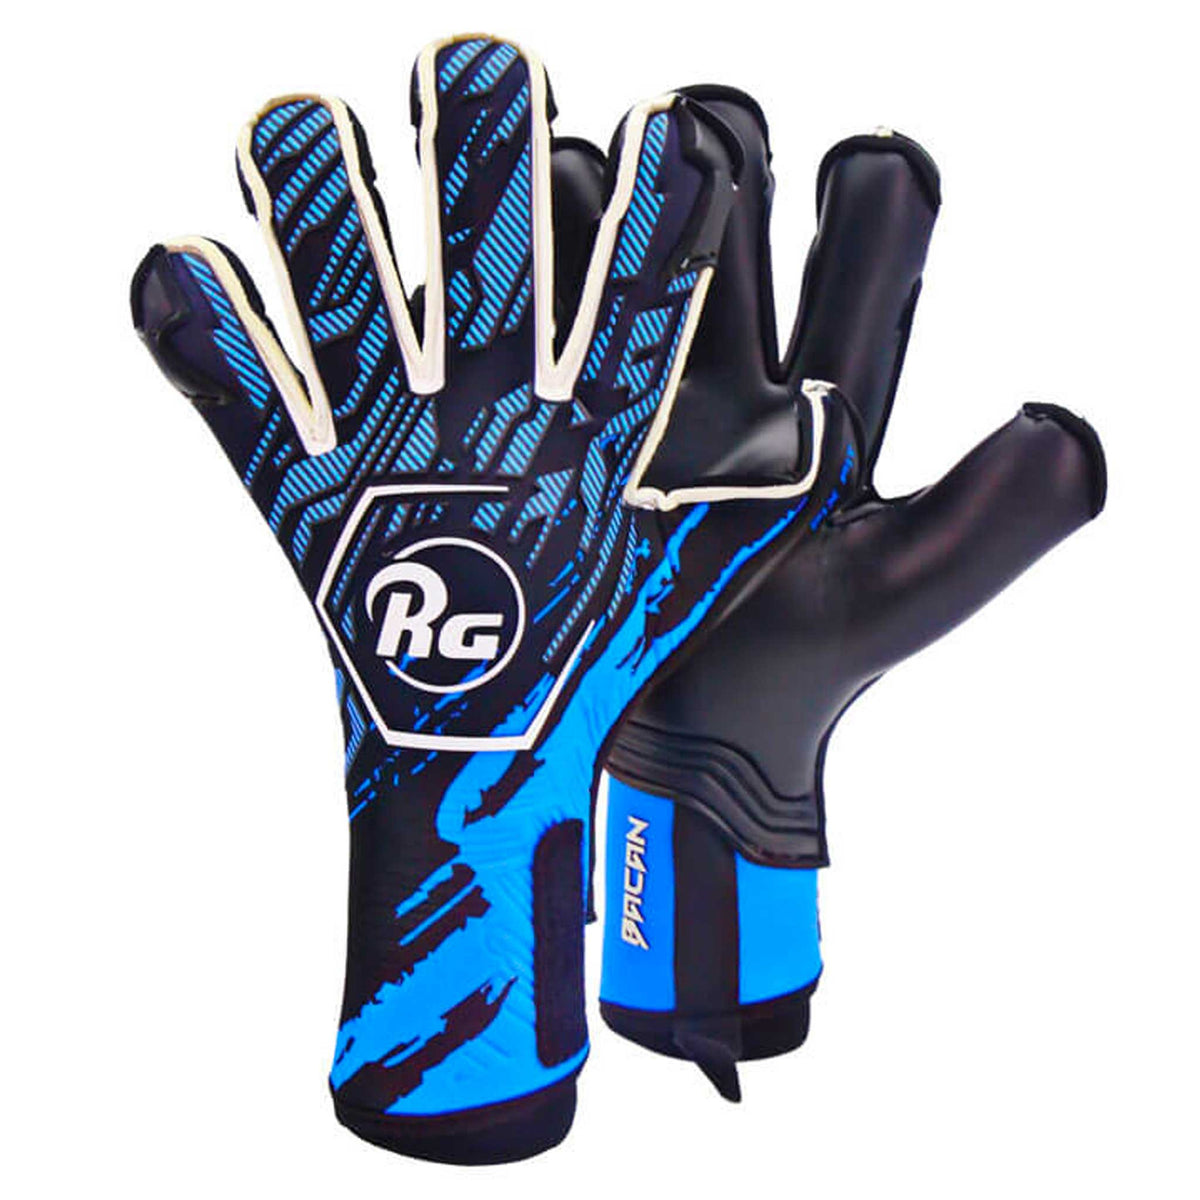 RG Goalkeeper Gloves Bacan 2022-2023 gants de gardien de but de soccer - Bleu / Noir